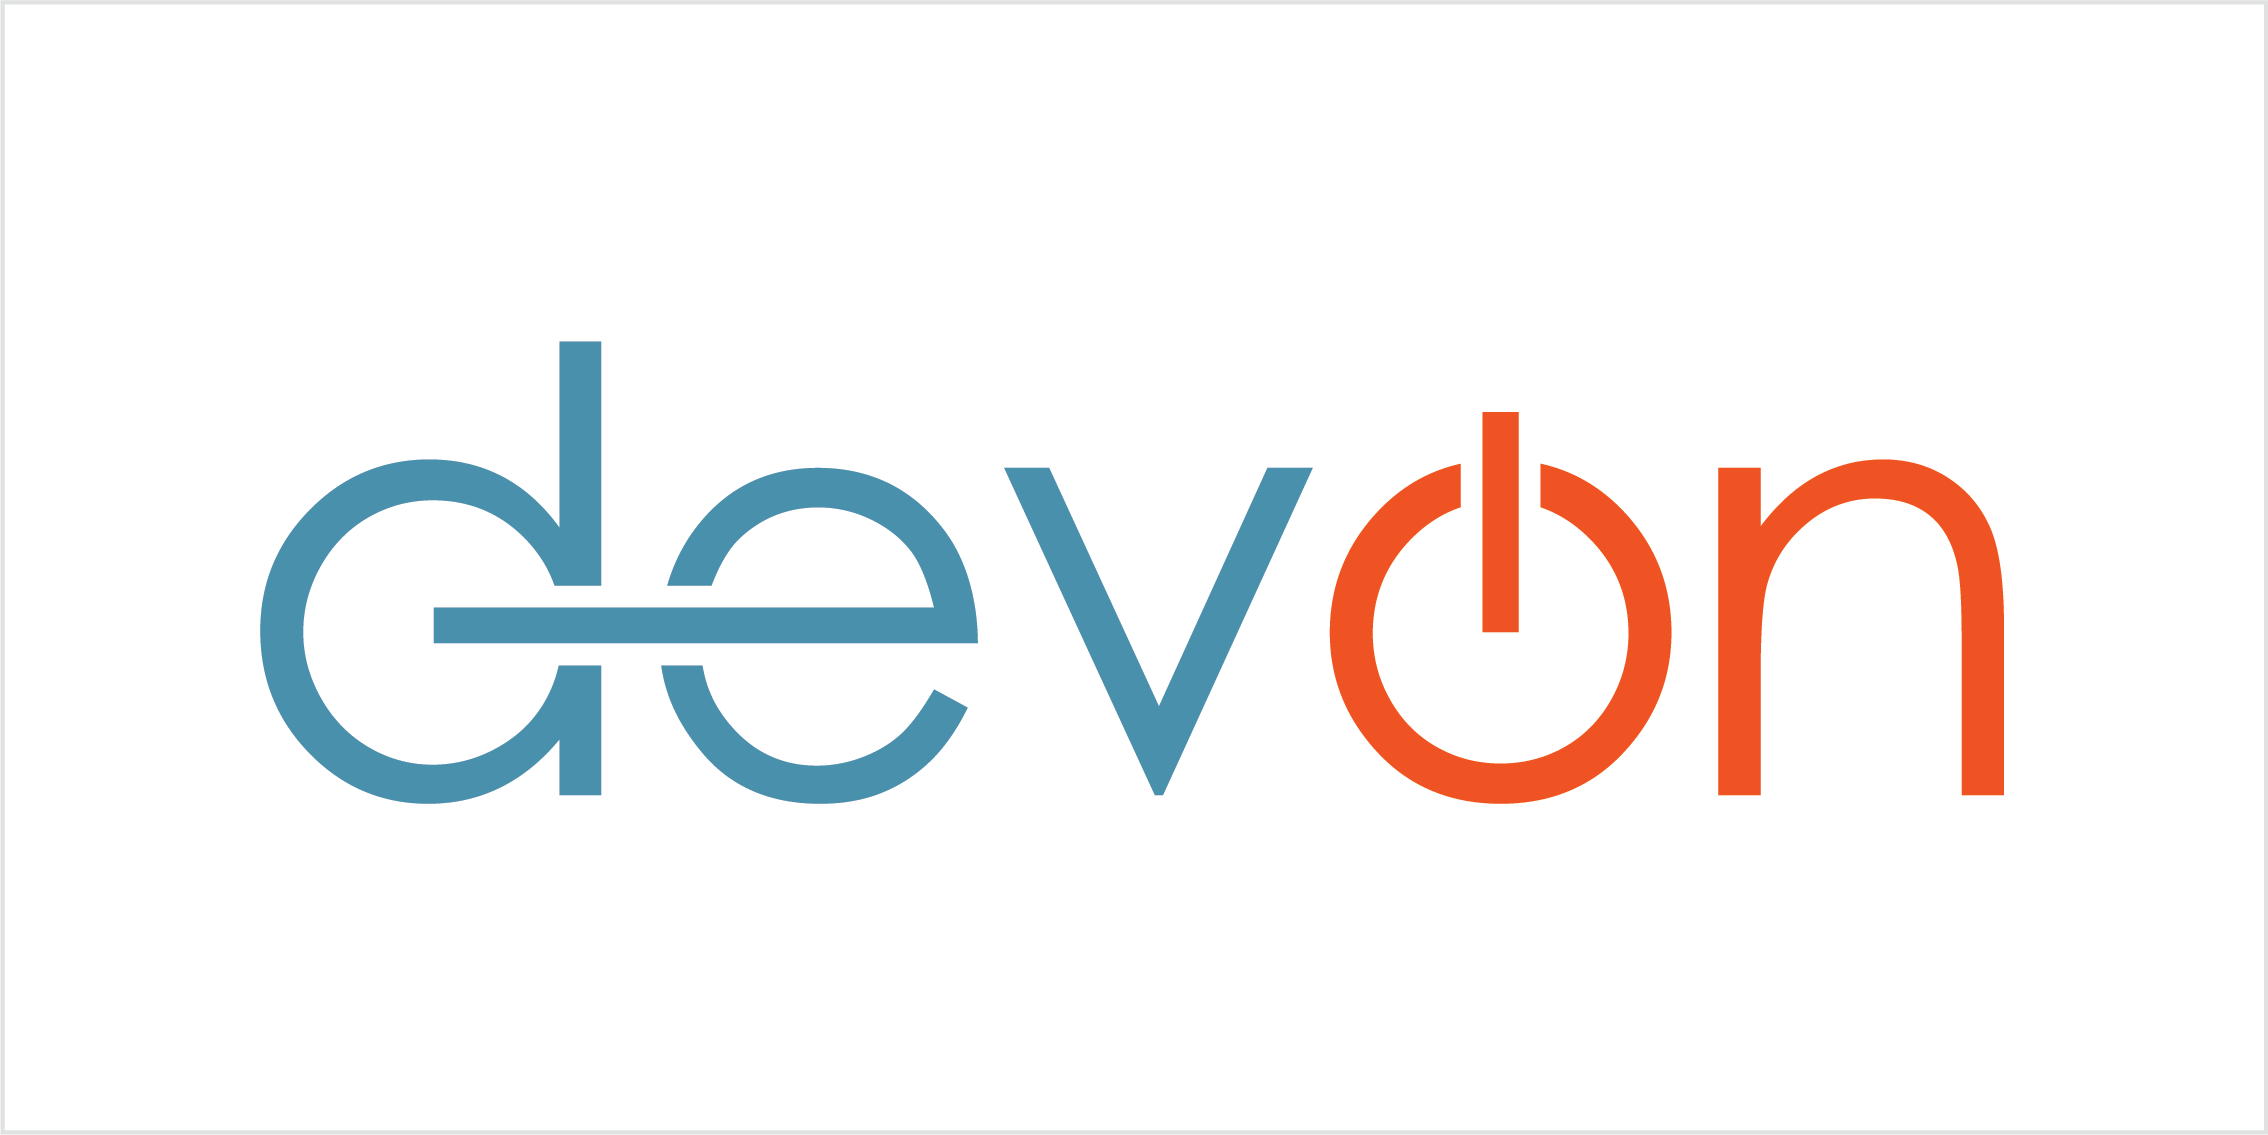 Devon Logo - Styleguide - DevOn